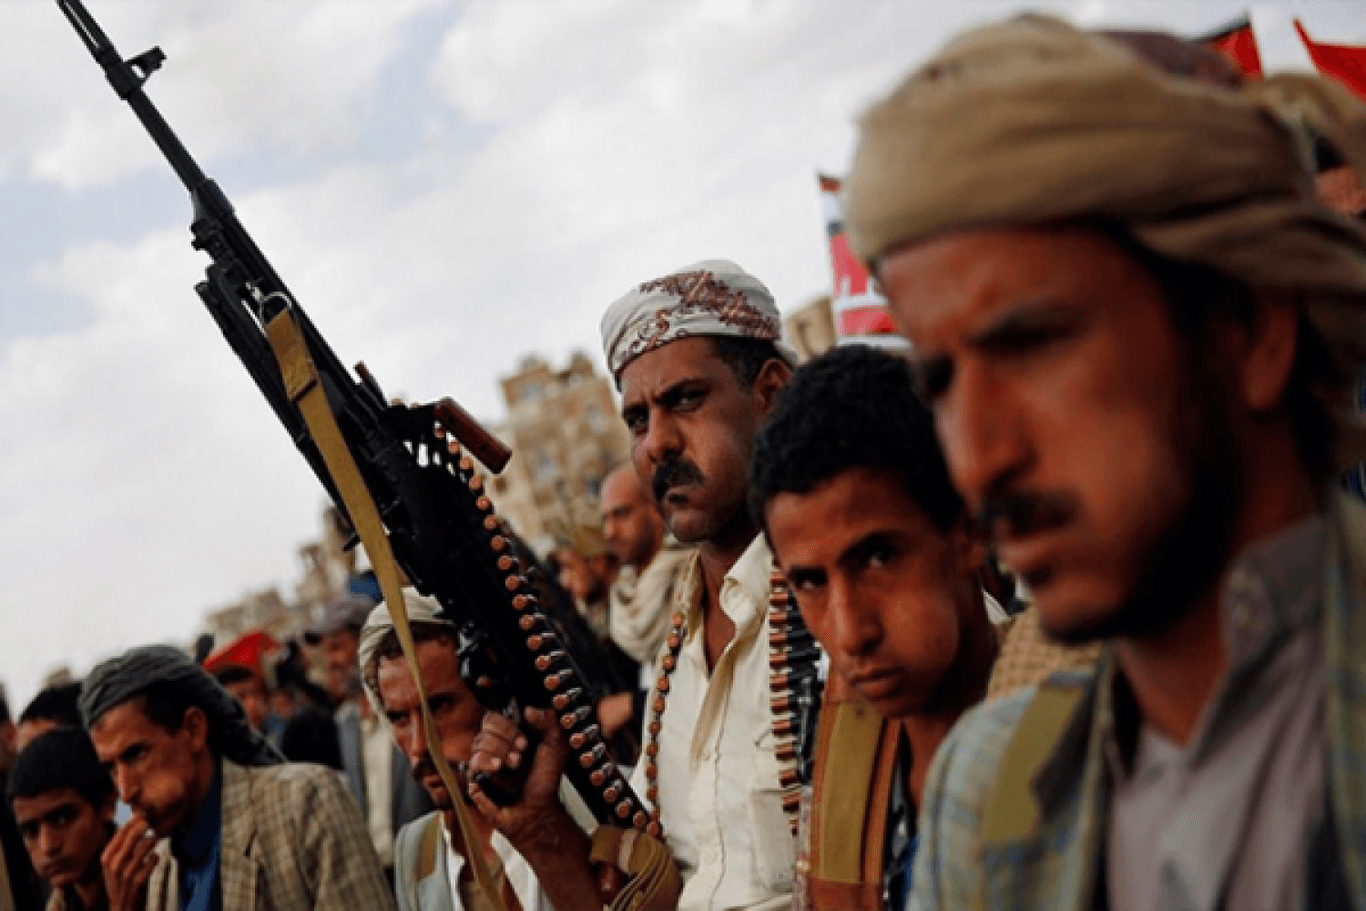 Ситуація в Ємені може спровокувати ескалацію конфлікту між арабськими країнами — сходознавець